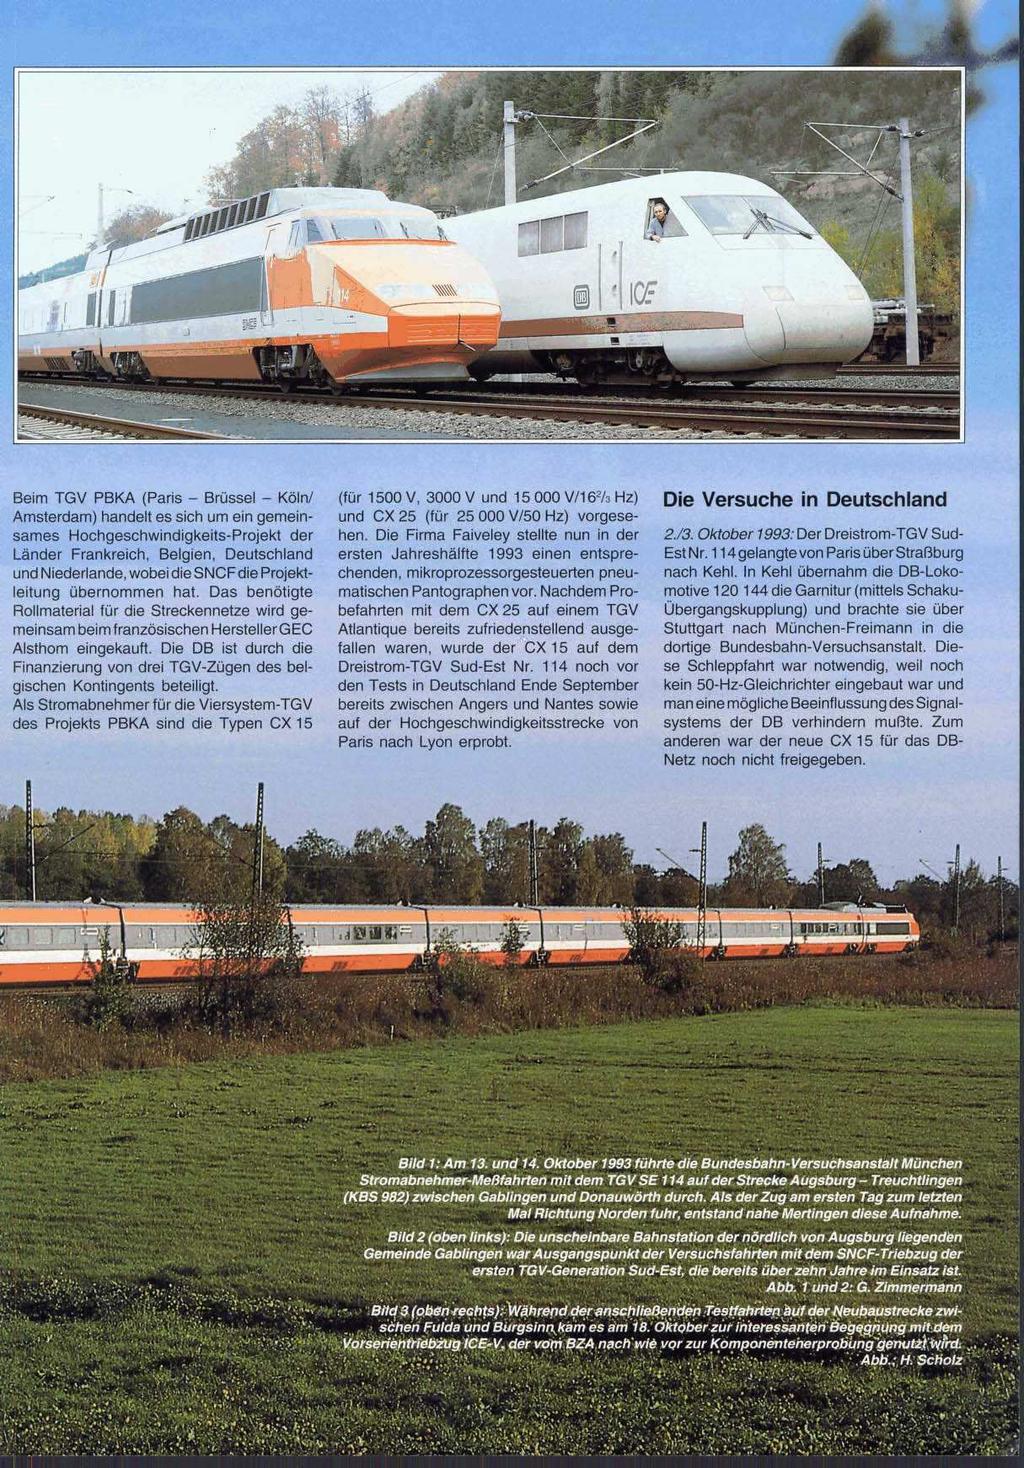 Beim TGV PBKA (Paris - Brüssel - Kölnl Amsterdam) handelt es sich um ein gemeinsames Hochgeschwindigkeits-Projekt der Länder Frankreich, Belgien, Deutschland und Niederlande, wobei die SNCFdie